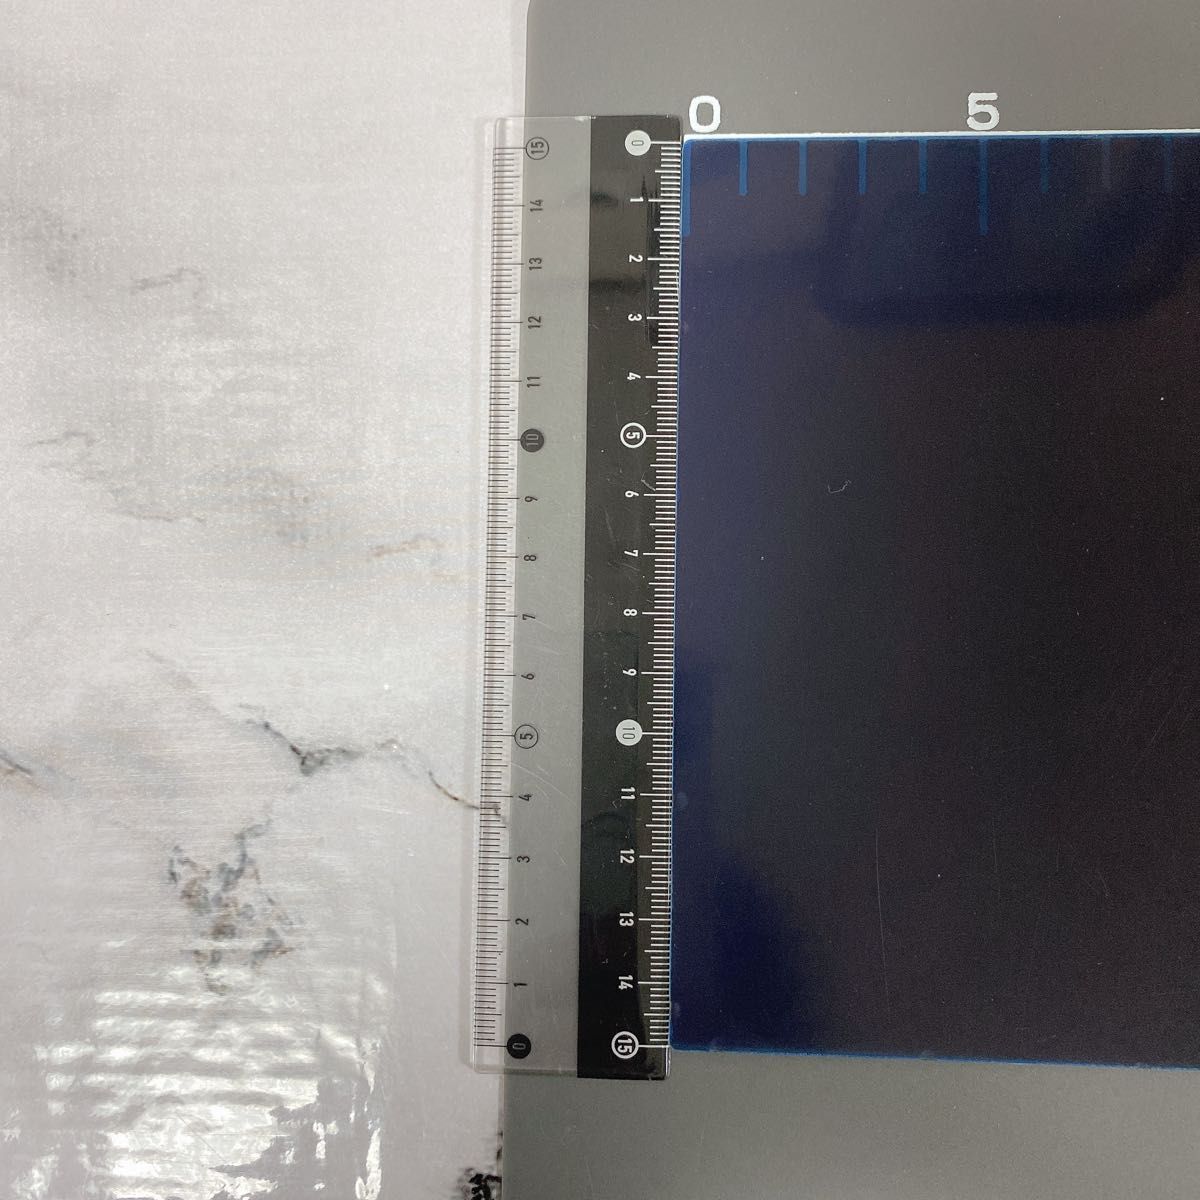 覗き見防止フィルム パソコン プライバシーフィルター PC 液晶保護フィルム 両面使用可能 ブルーライトカット 反射防止 着脱簡単